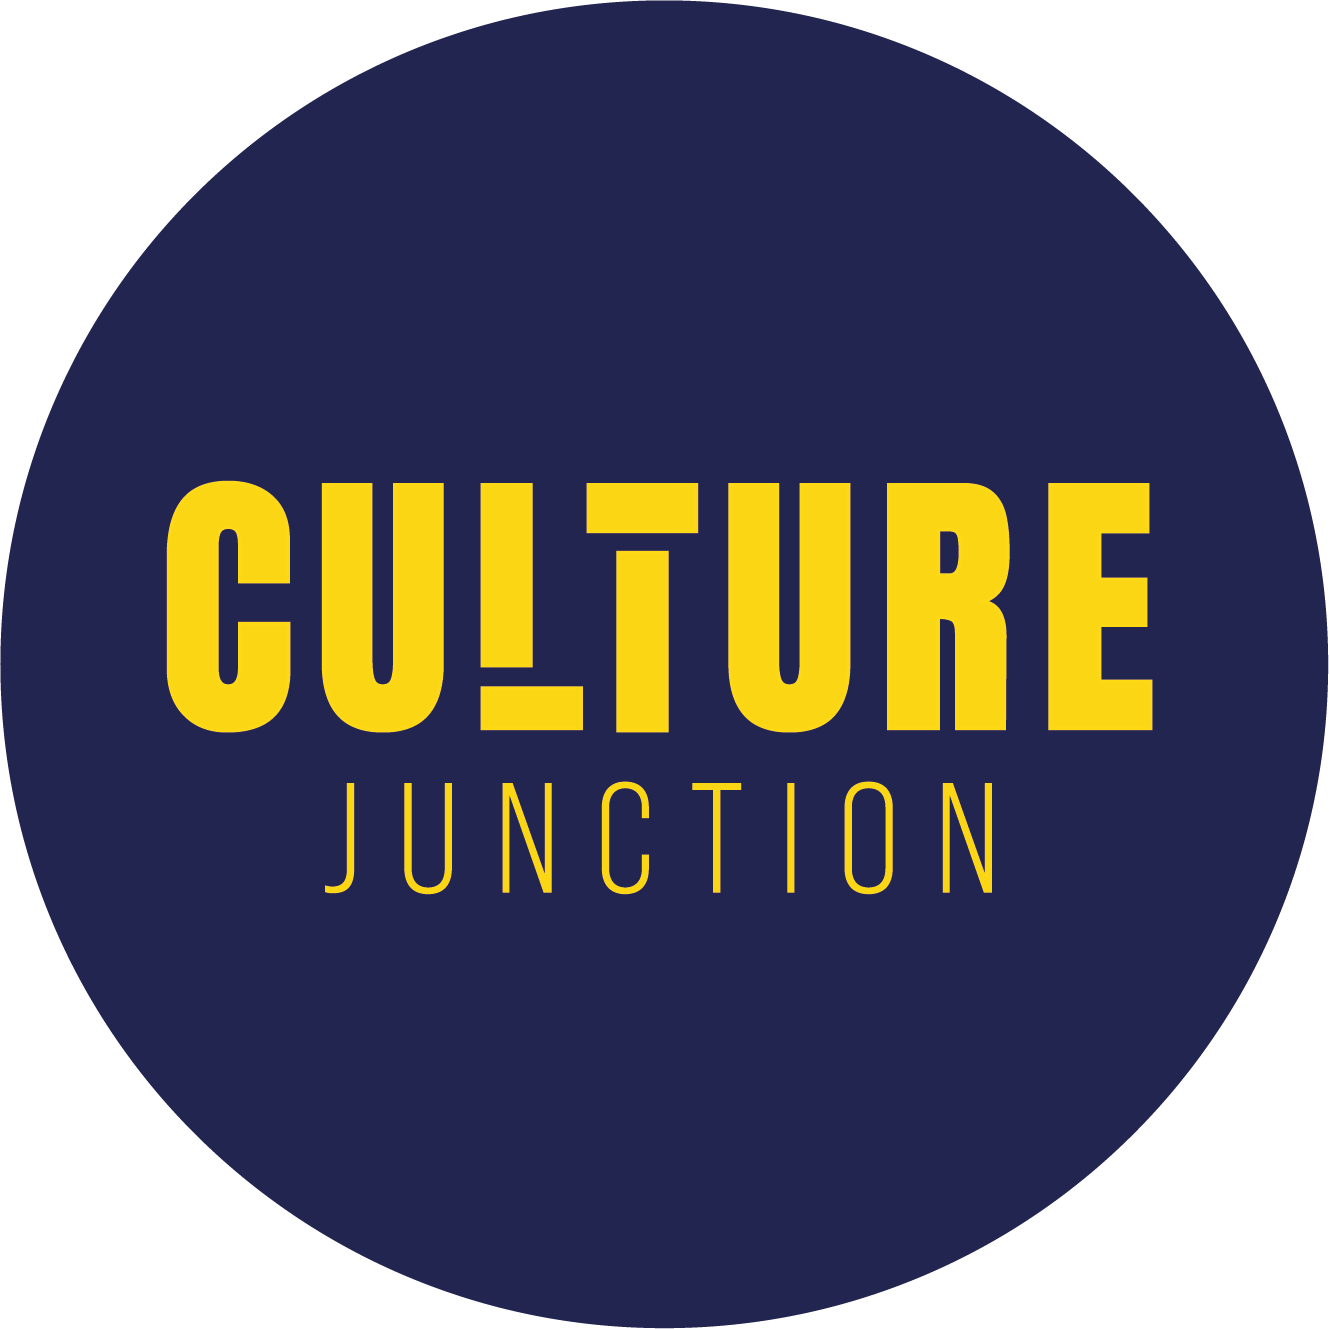 Culture Junction